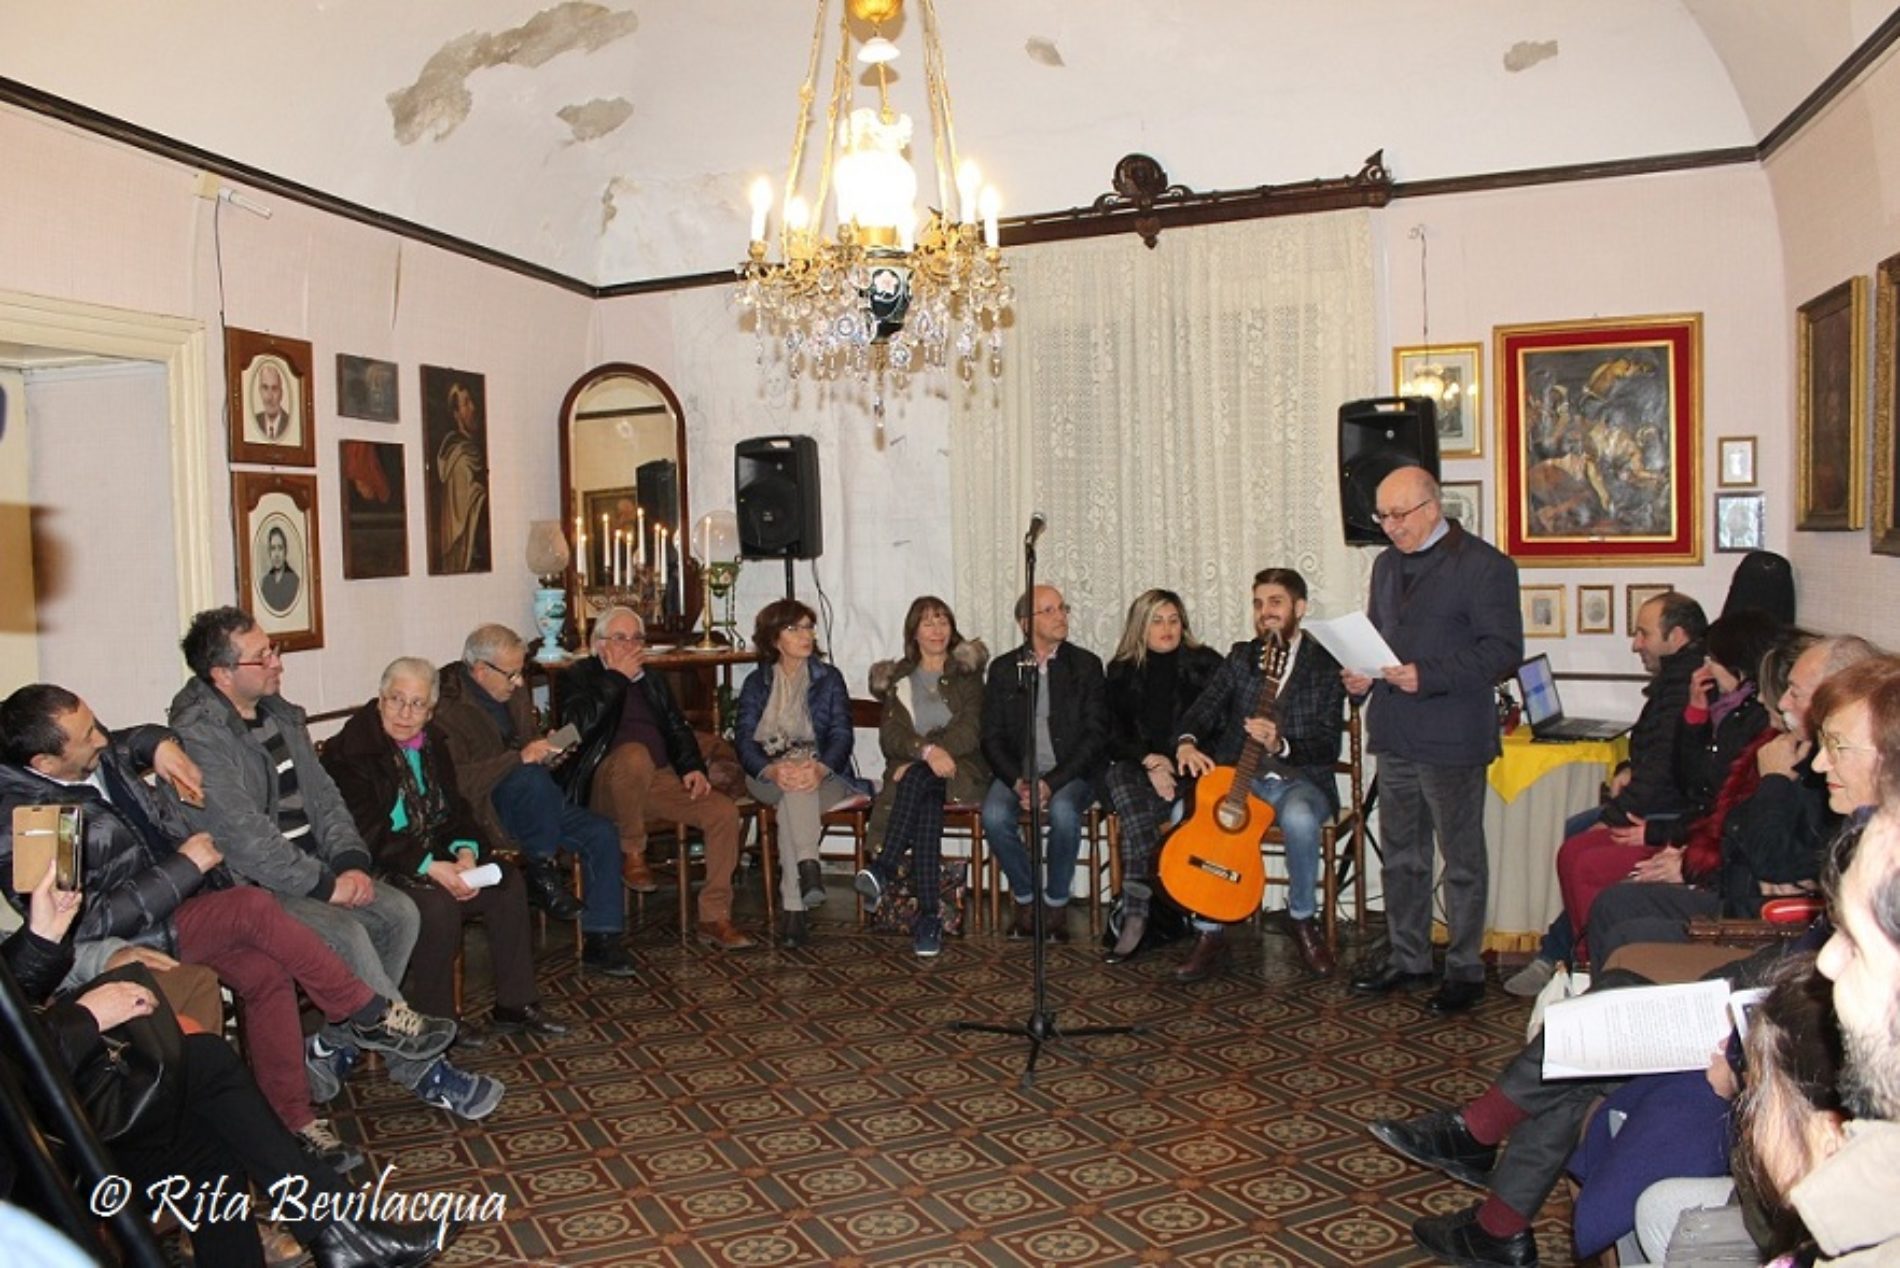 Il Salotto artistico- letterario “Civico 49” ospita il cantautore nisseno Luigi Salvaggio